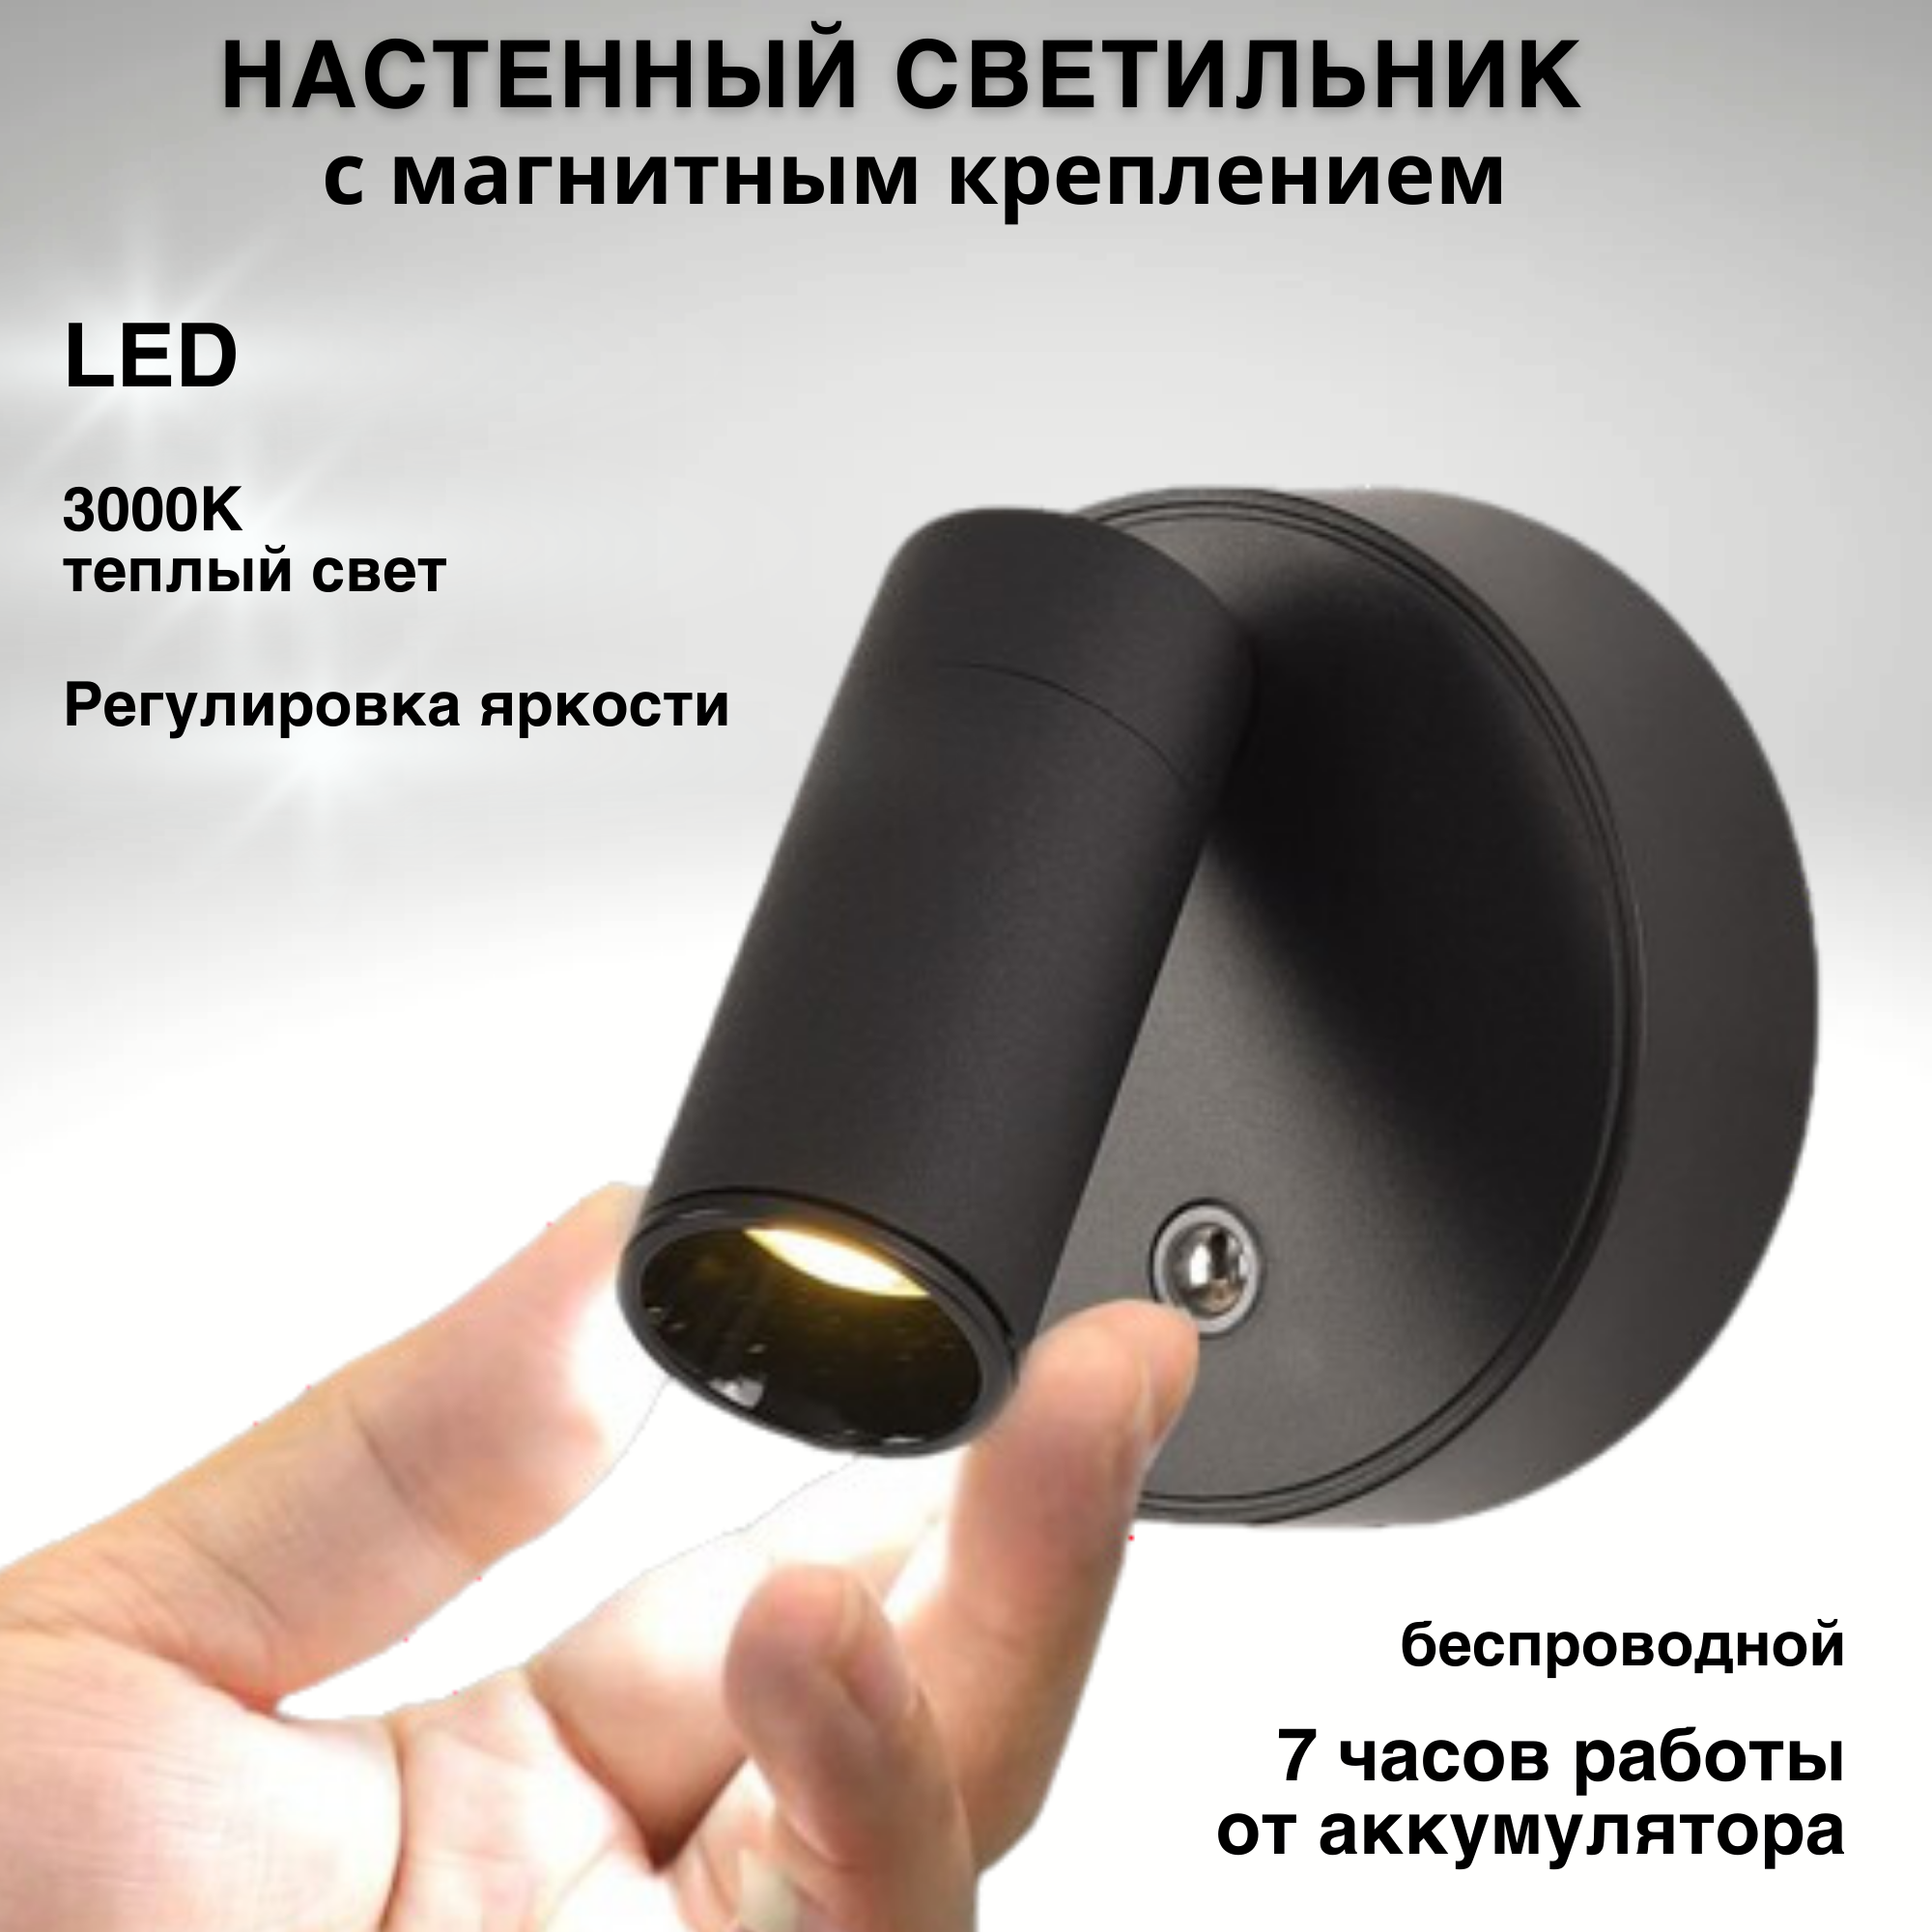 Беспроводной светодиодный настенный светильник с аккумулятором FEDOTOV FED-0062-BK черный